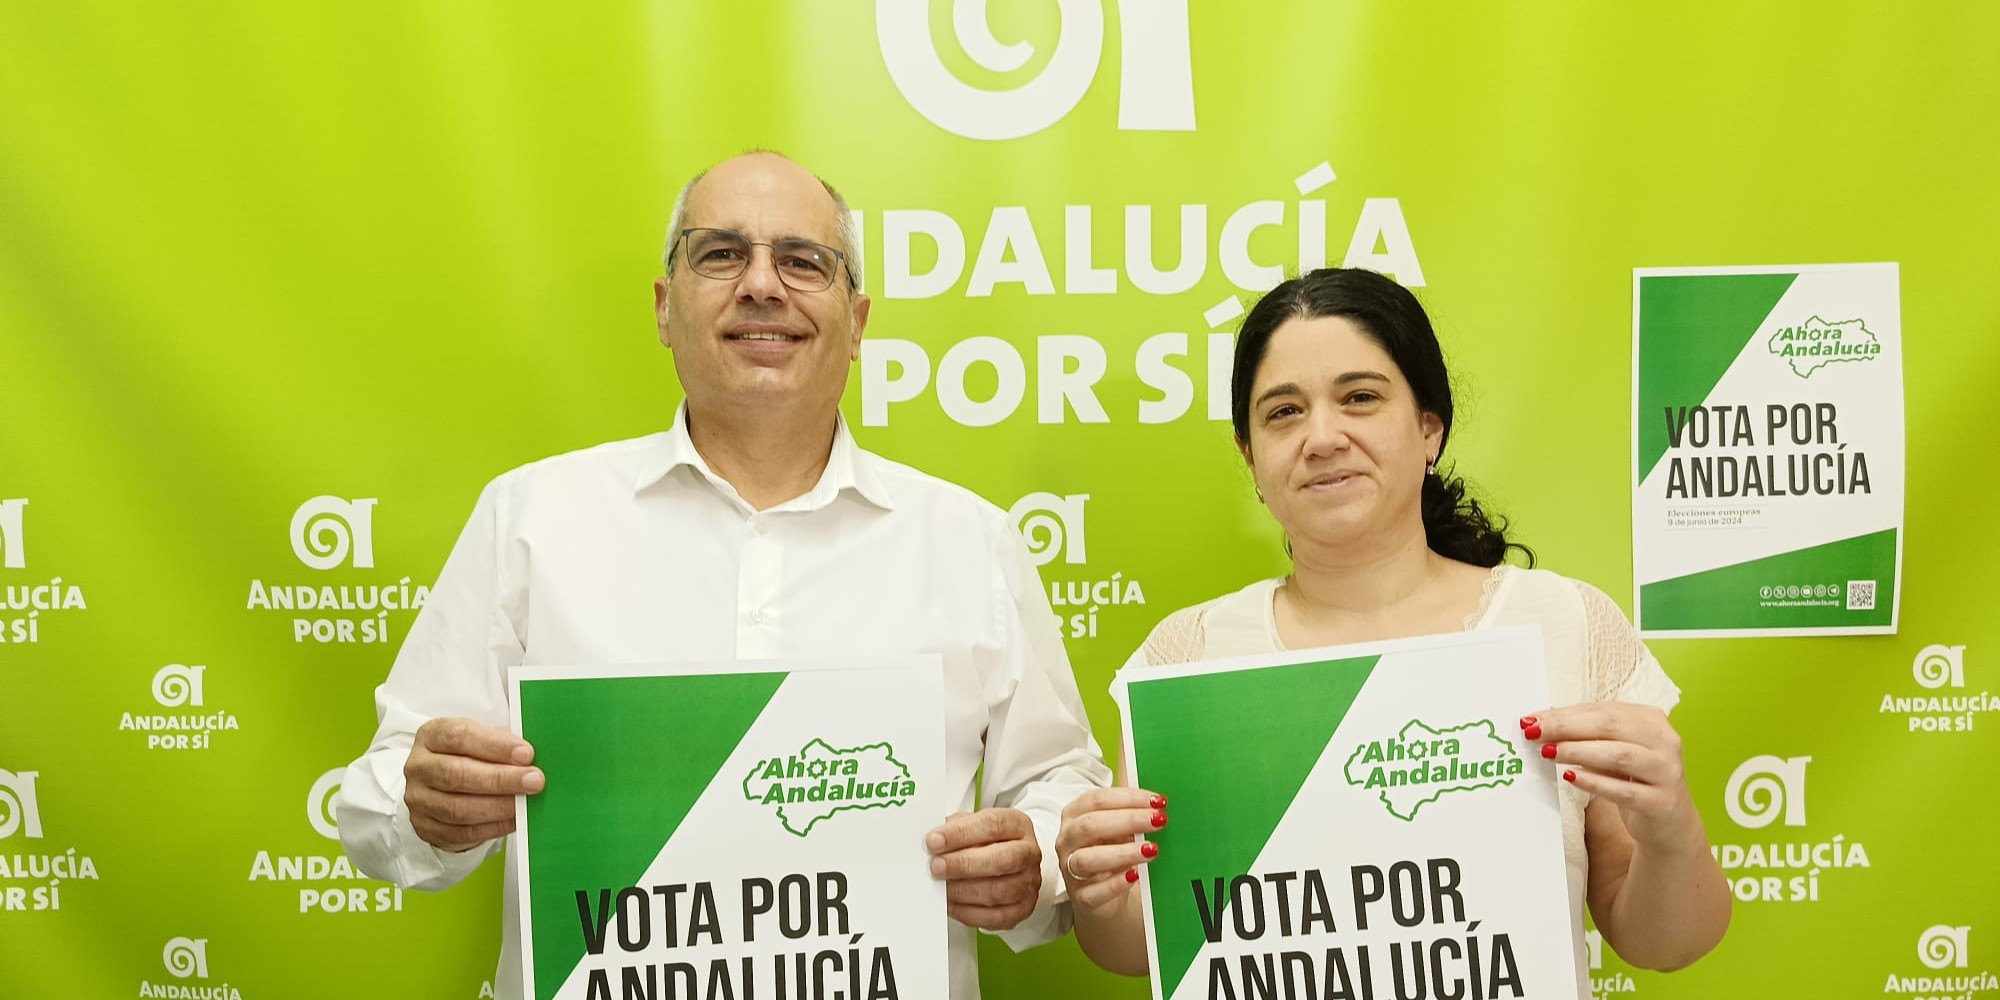 ahora-andalucia-propone-defender-la-soberania-andaluza-como-sujeto-politico-colectivo